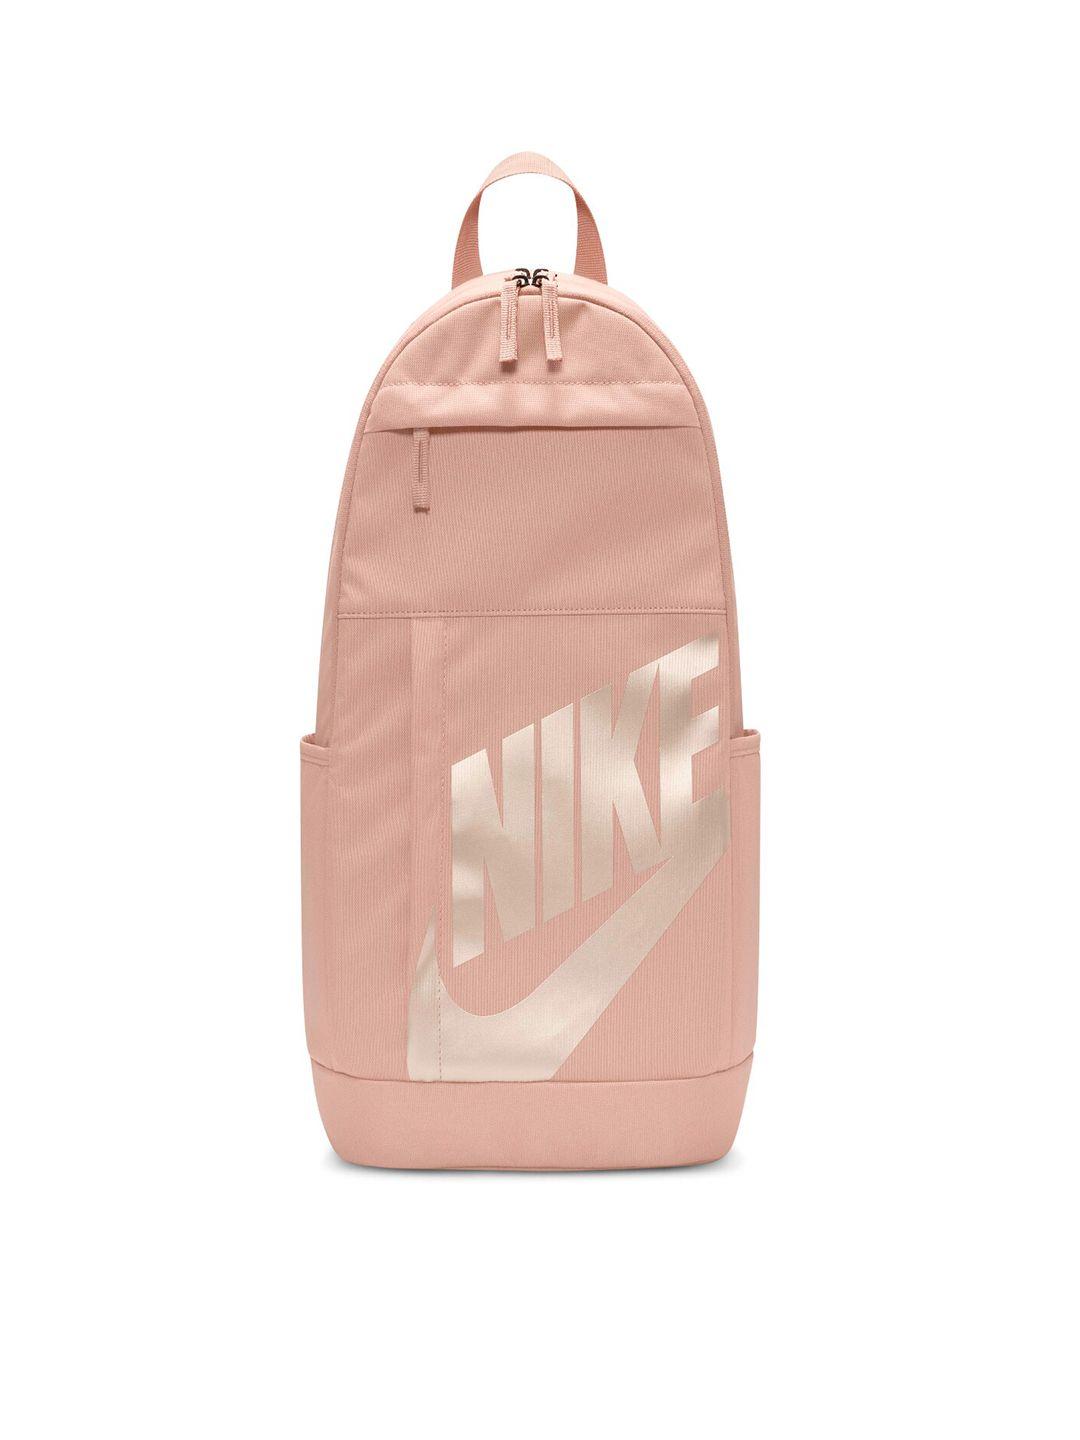 nike brand logo-printed backpack 21l